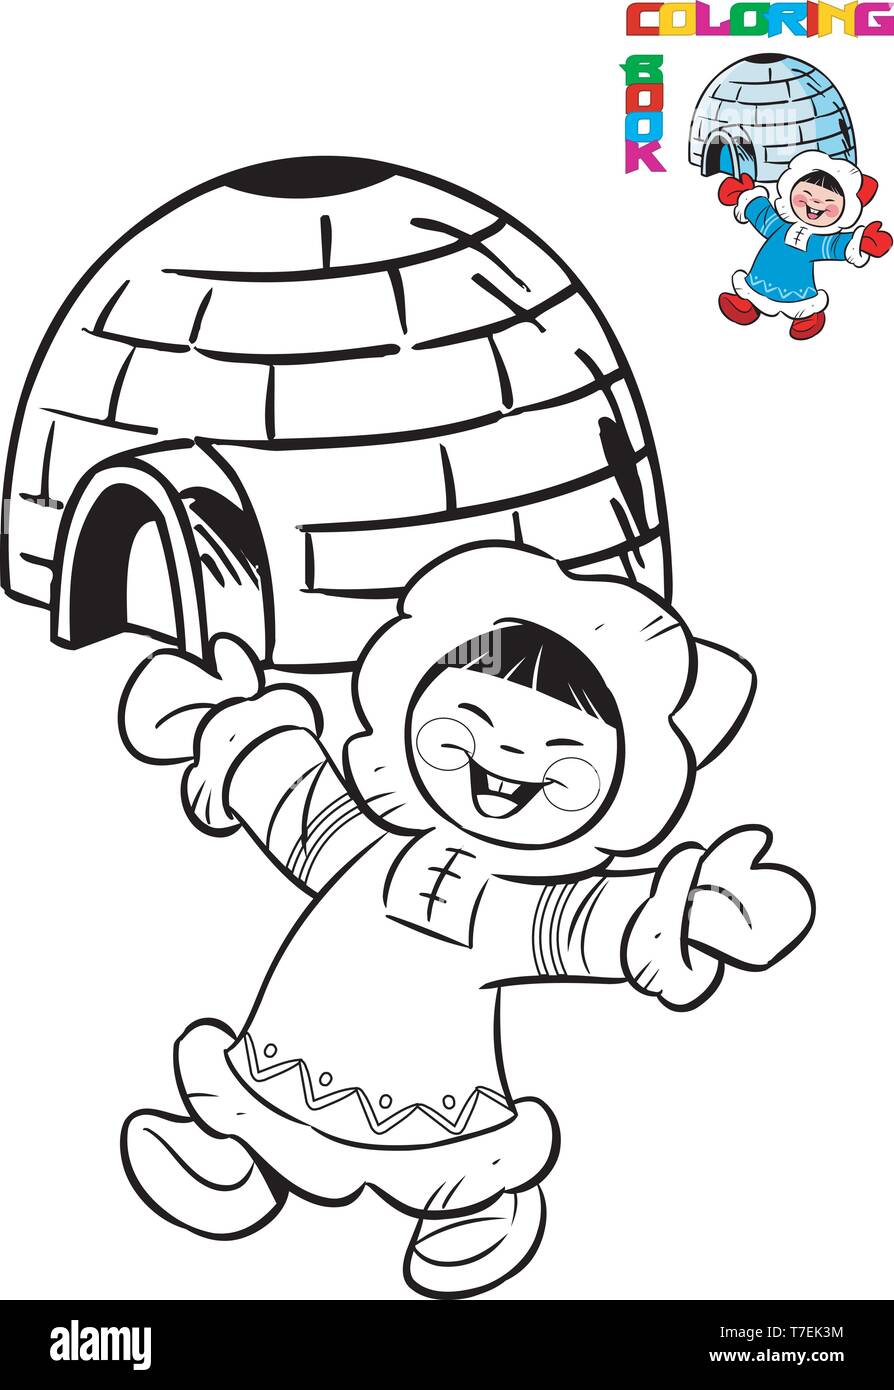 L'illustration présente cartoon eskimo en costume traditionnel sur le fond de l'igloo. Illustration réalisée en contour noir pour Coloring Book Illustration de Vecteur